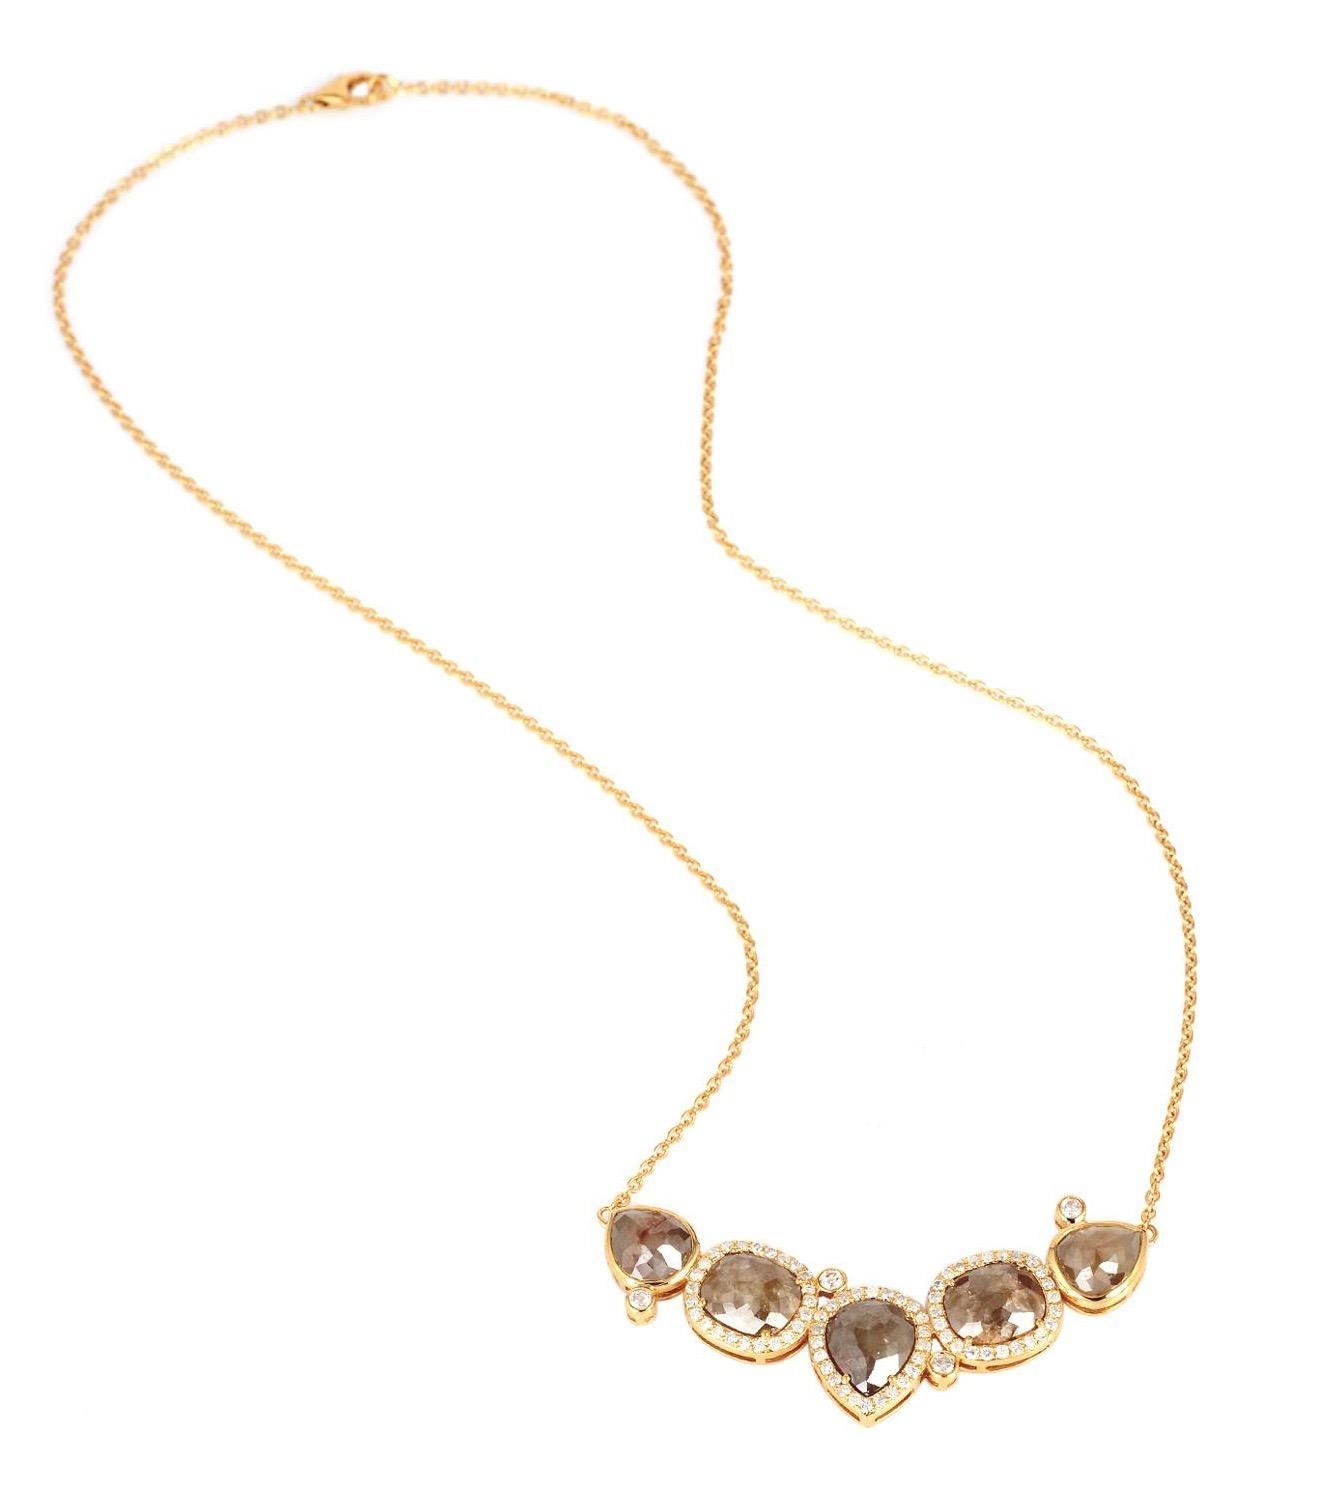 Uncut 9.69 Carat Fancy Diamond Pendant 18 Karat Gold Necklace For Sale